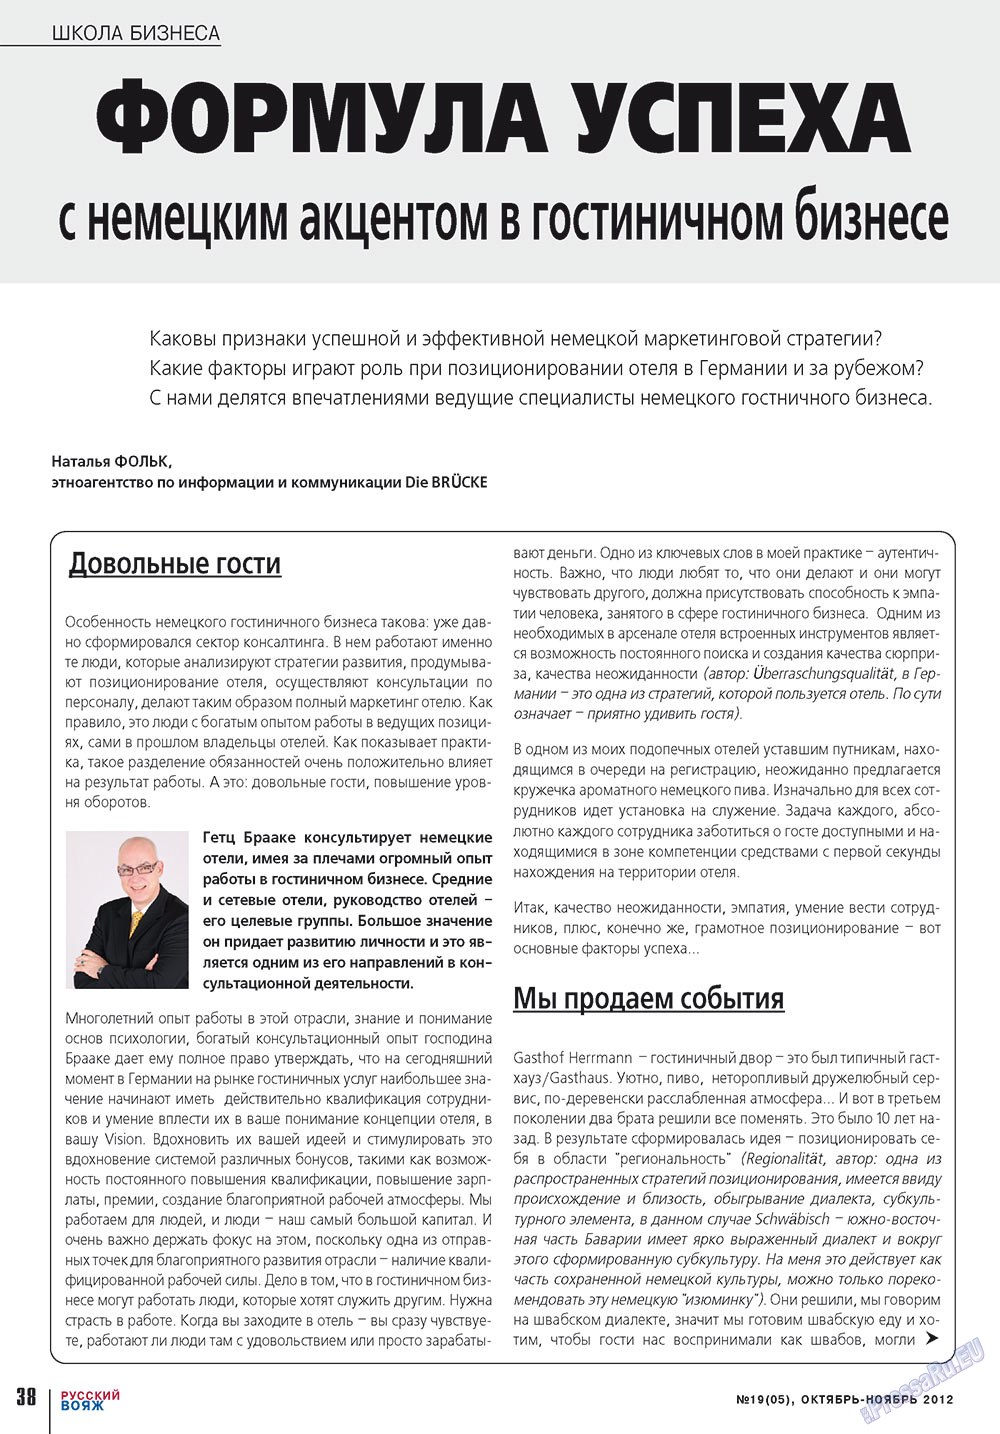 Русский вояж (журнал). 2012 год, номер 19, стр. 38